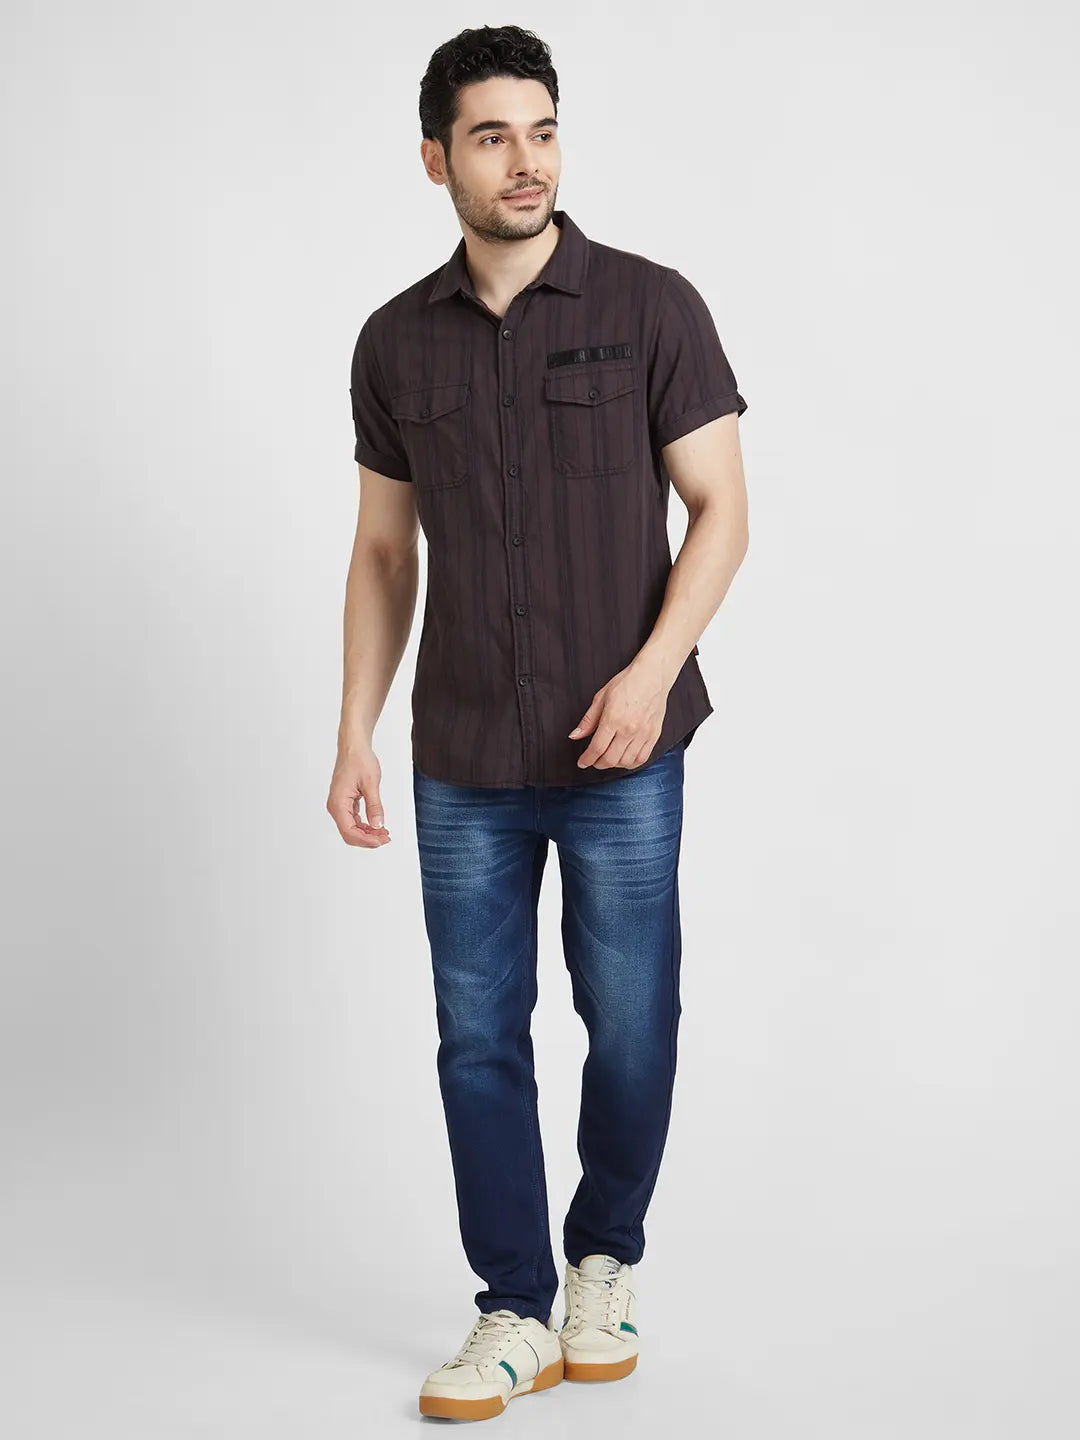 Denim shirt | Denim shirt, Black tshirt, Shirts